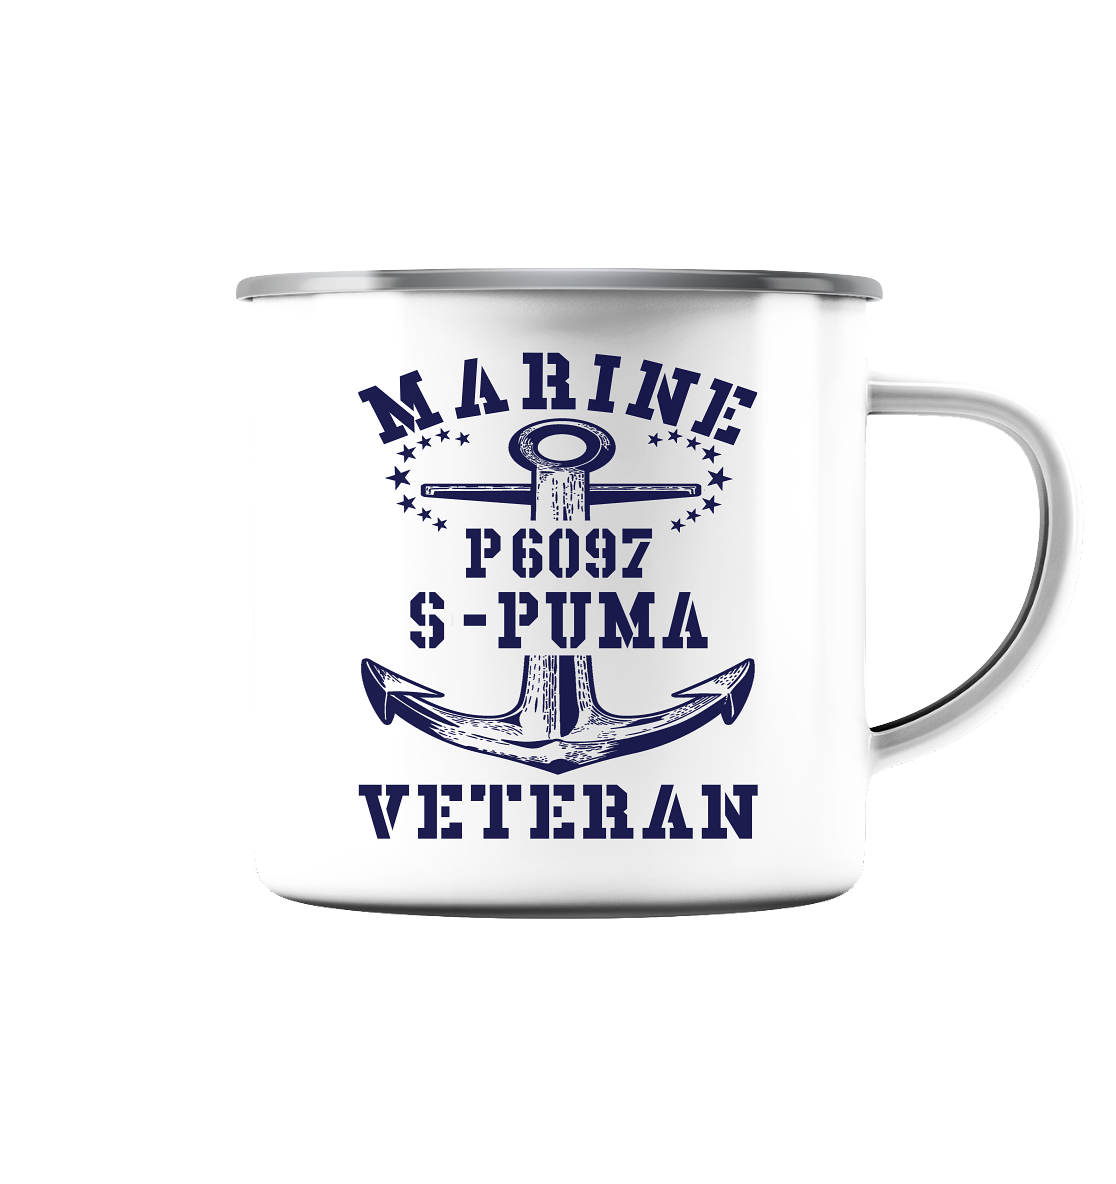 P6097 S-PUMA Marine Veteran - Emaille Tasse (Silber)